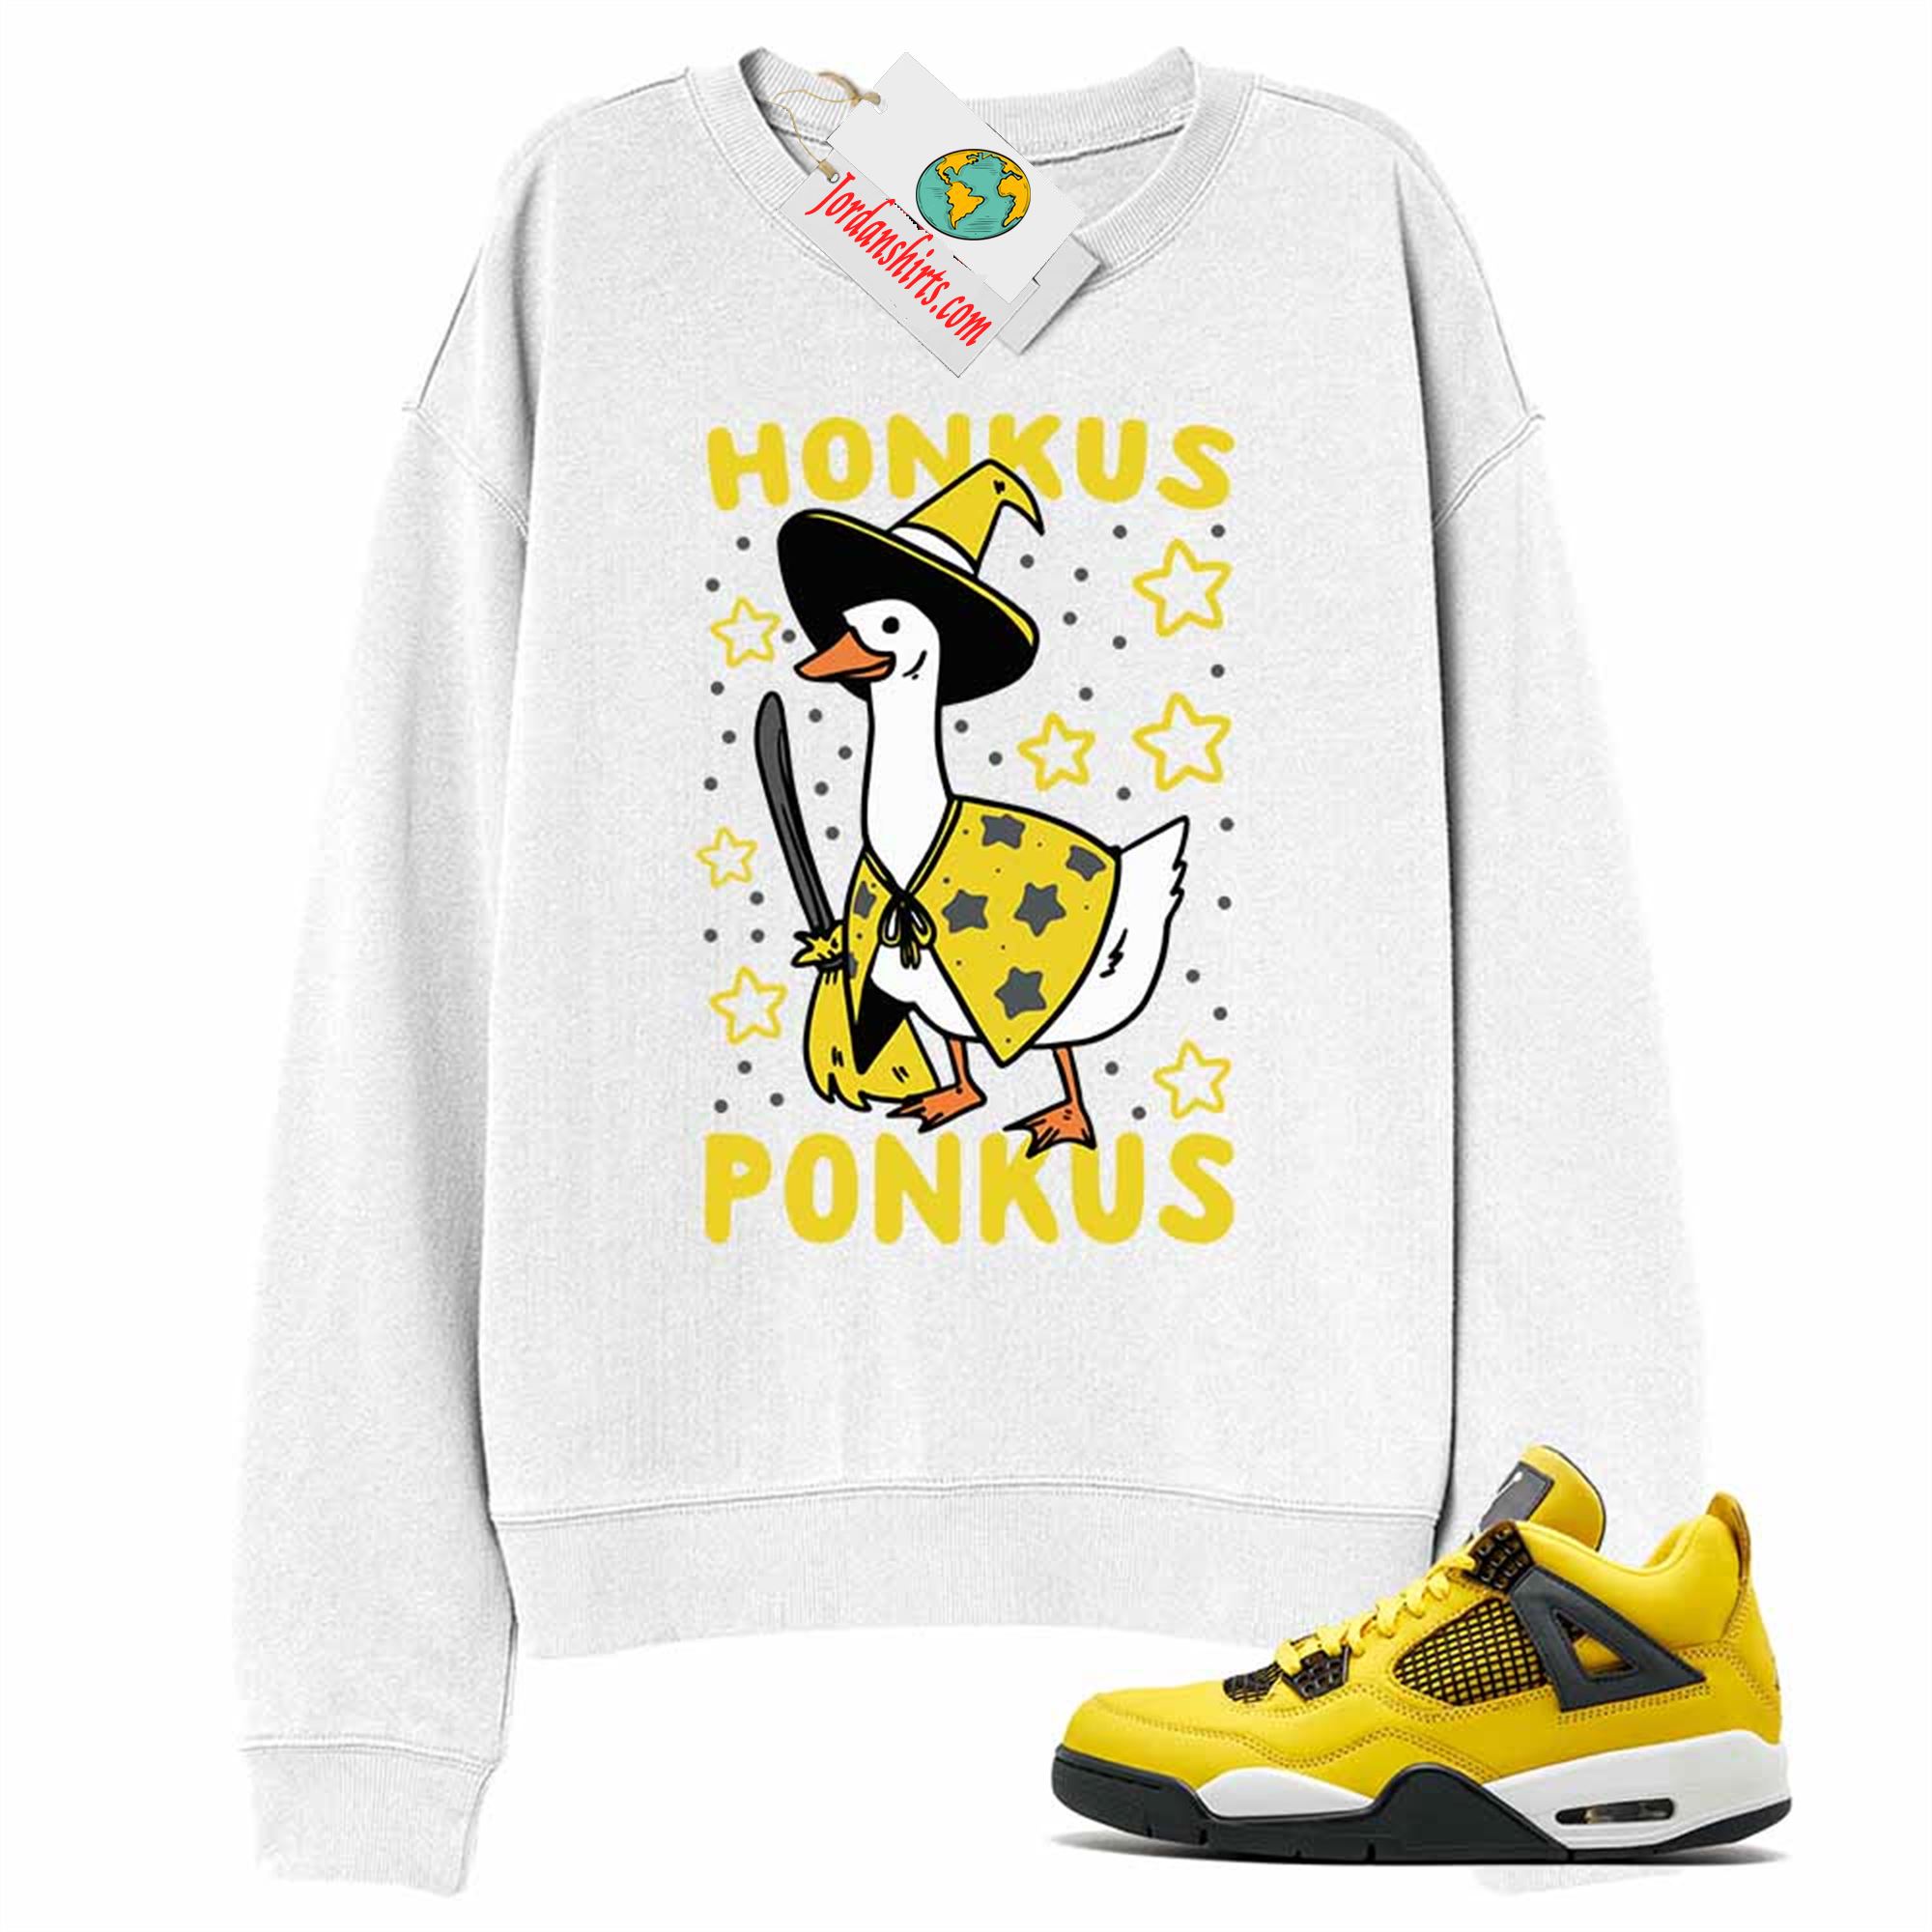 Jordan 4 Sweatshirt, Witches Duck Honkus Ponkus White Sweatshirt Air Jordan 4 Lightning 4s Full Size Up To 5xl